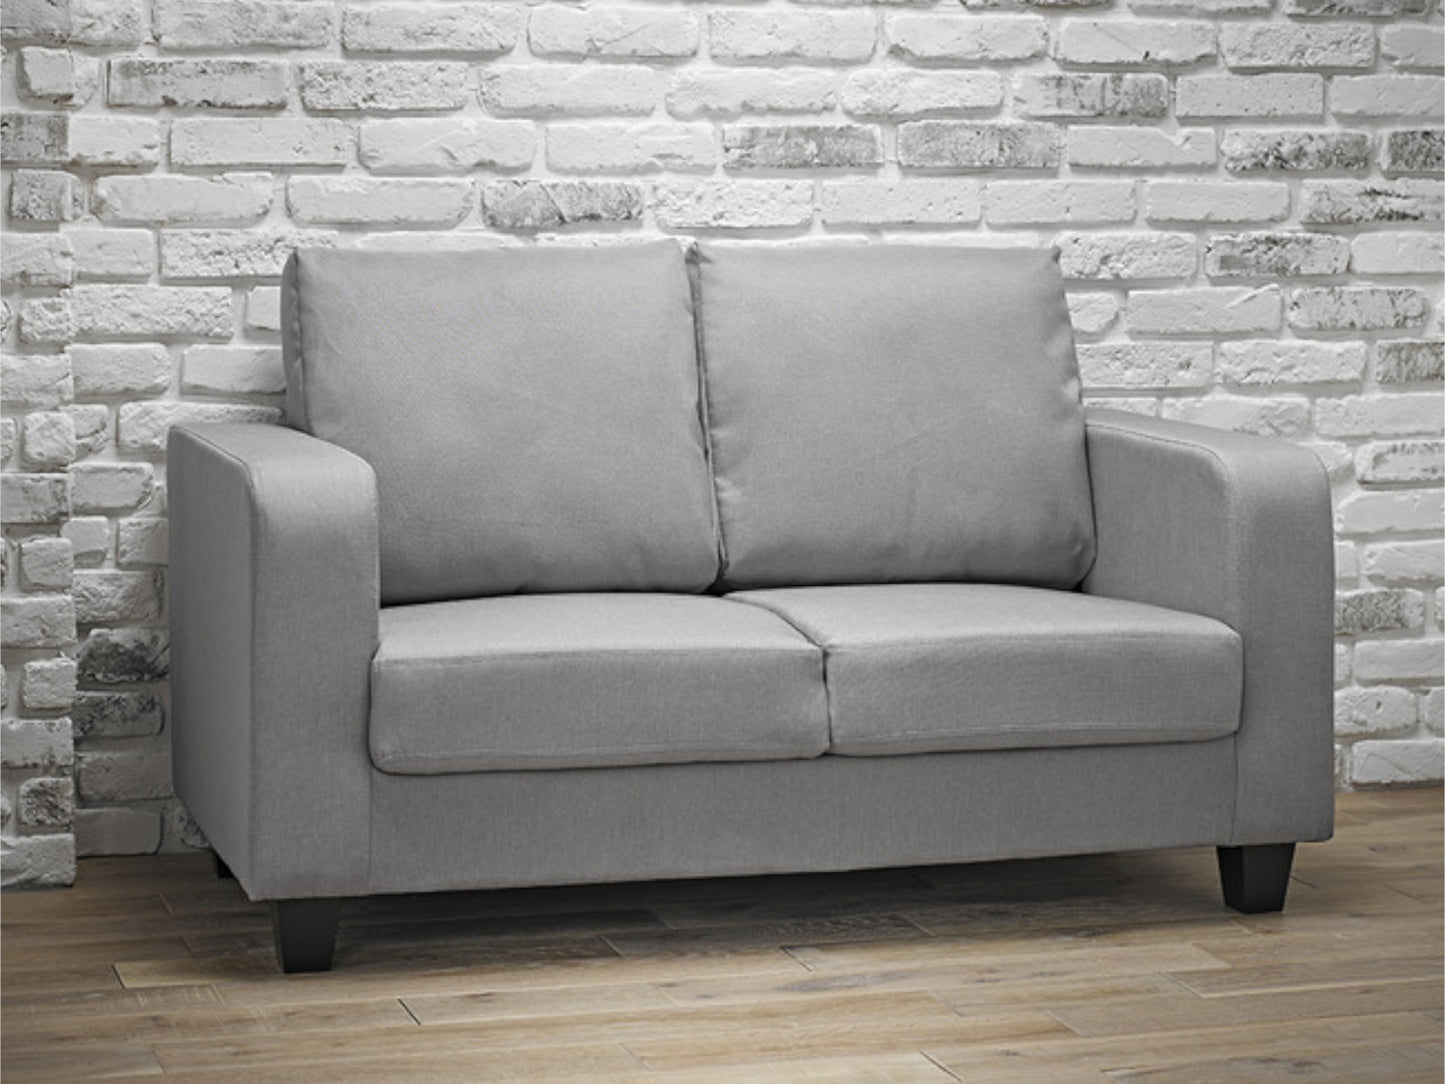 Sofa in a Box in Grey Fabric